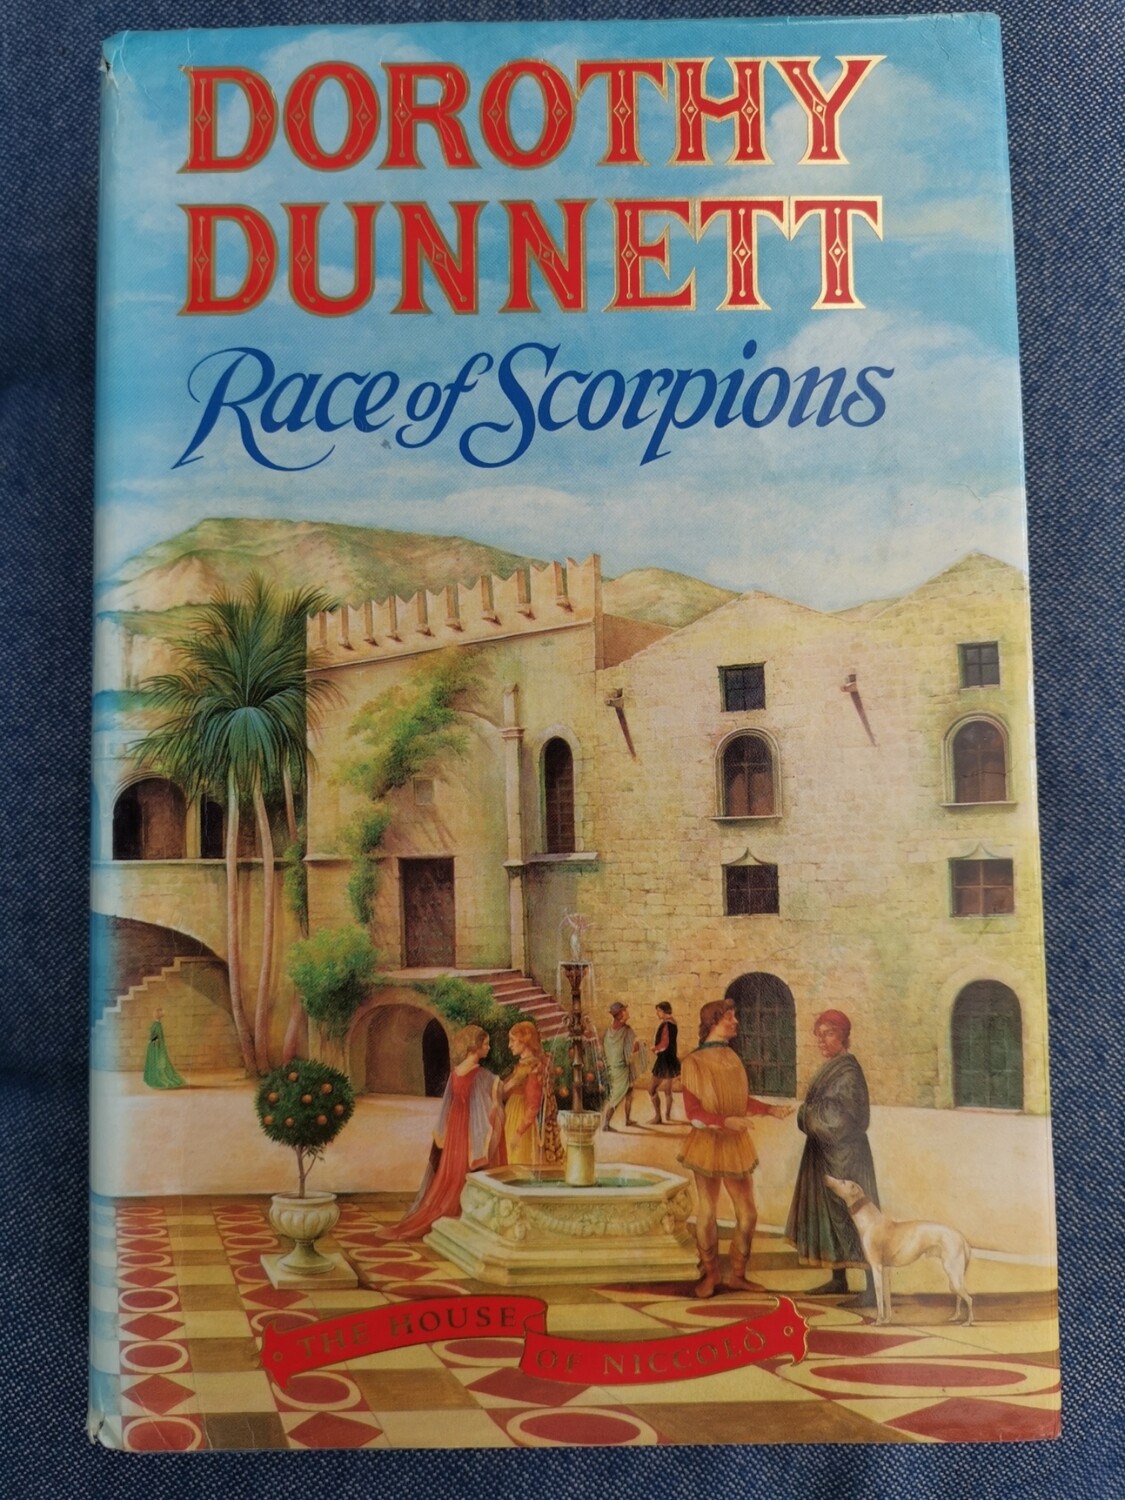 Race of scorpions, Dorothy Dunnett